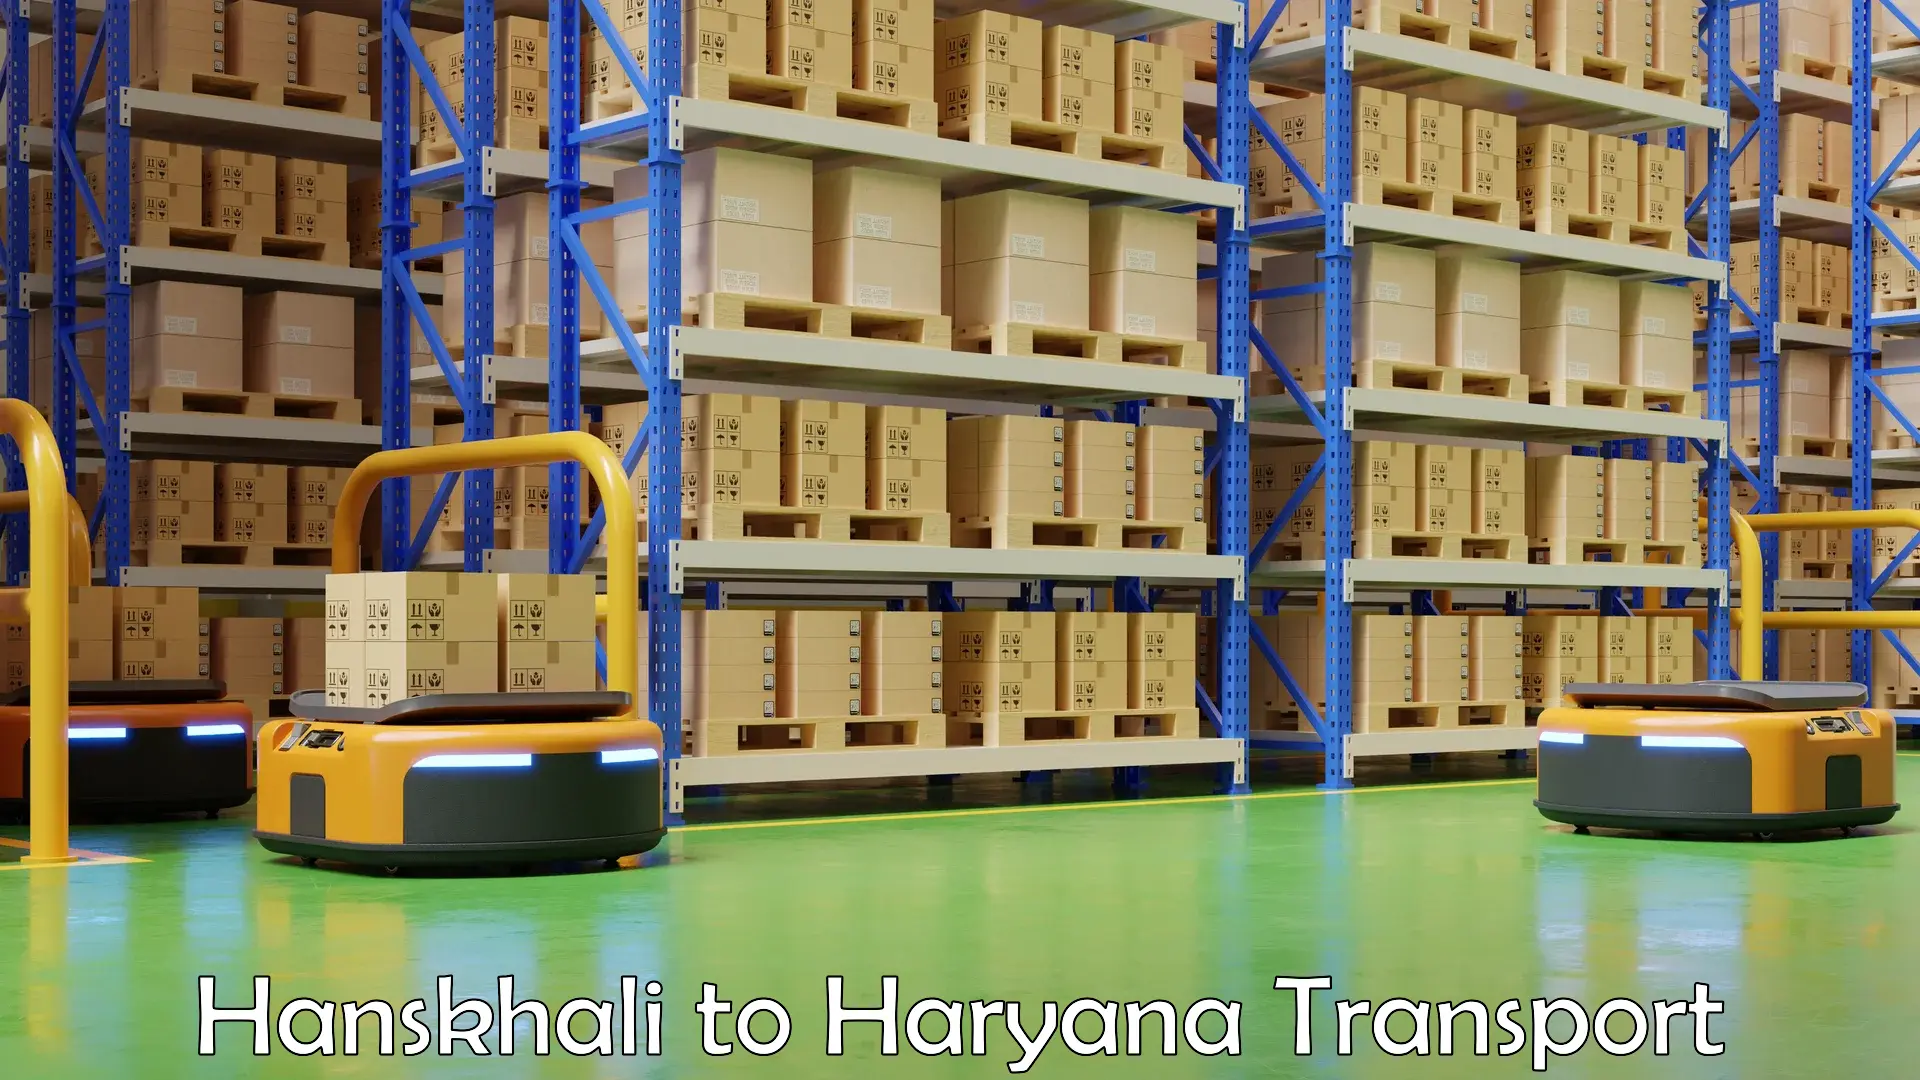 Delivery service Hanskhali to NCR Haryana